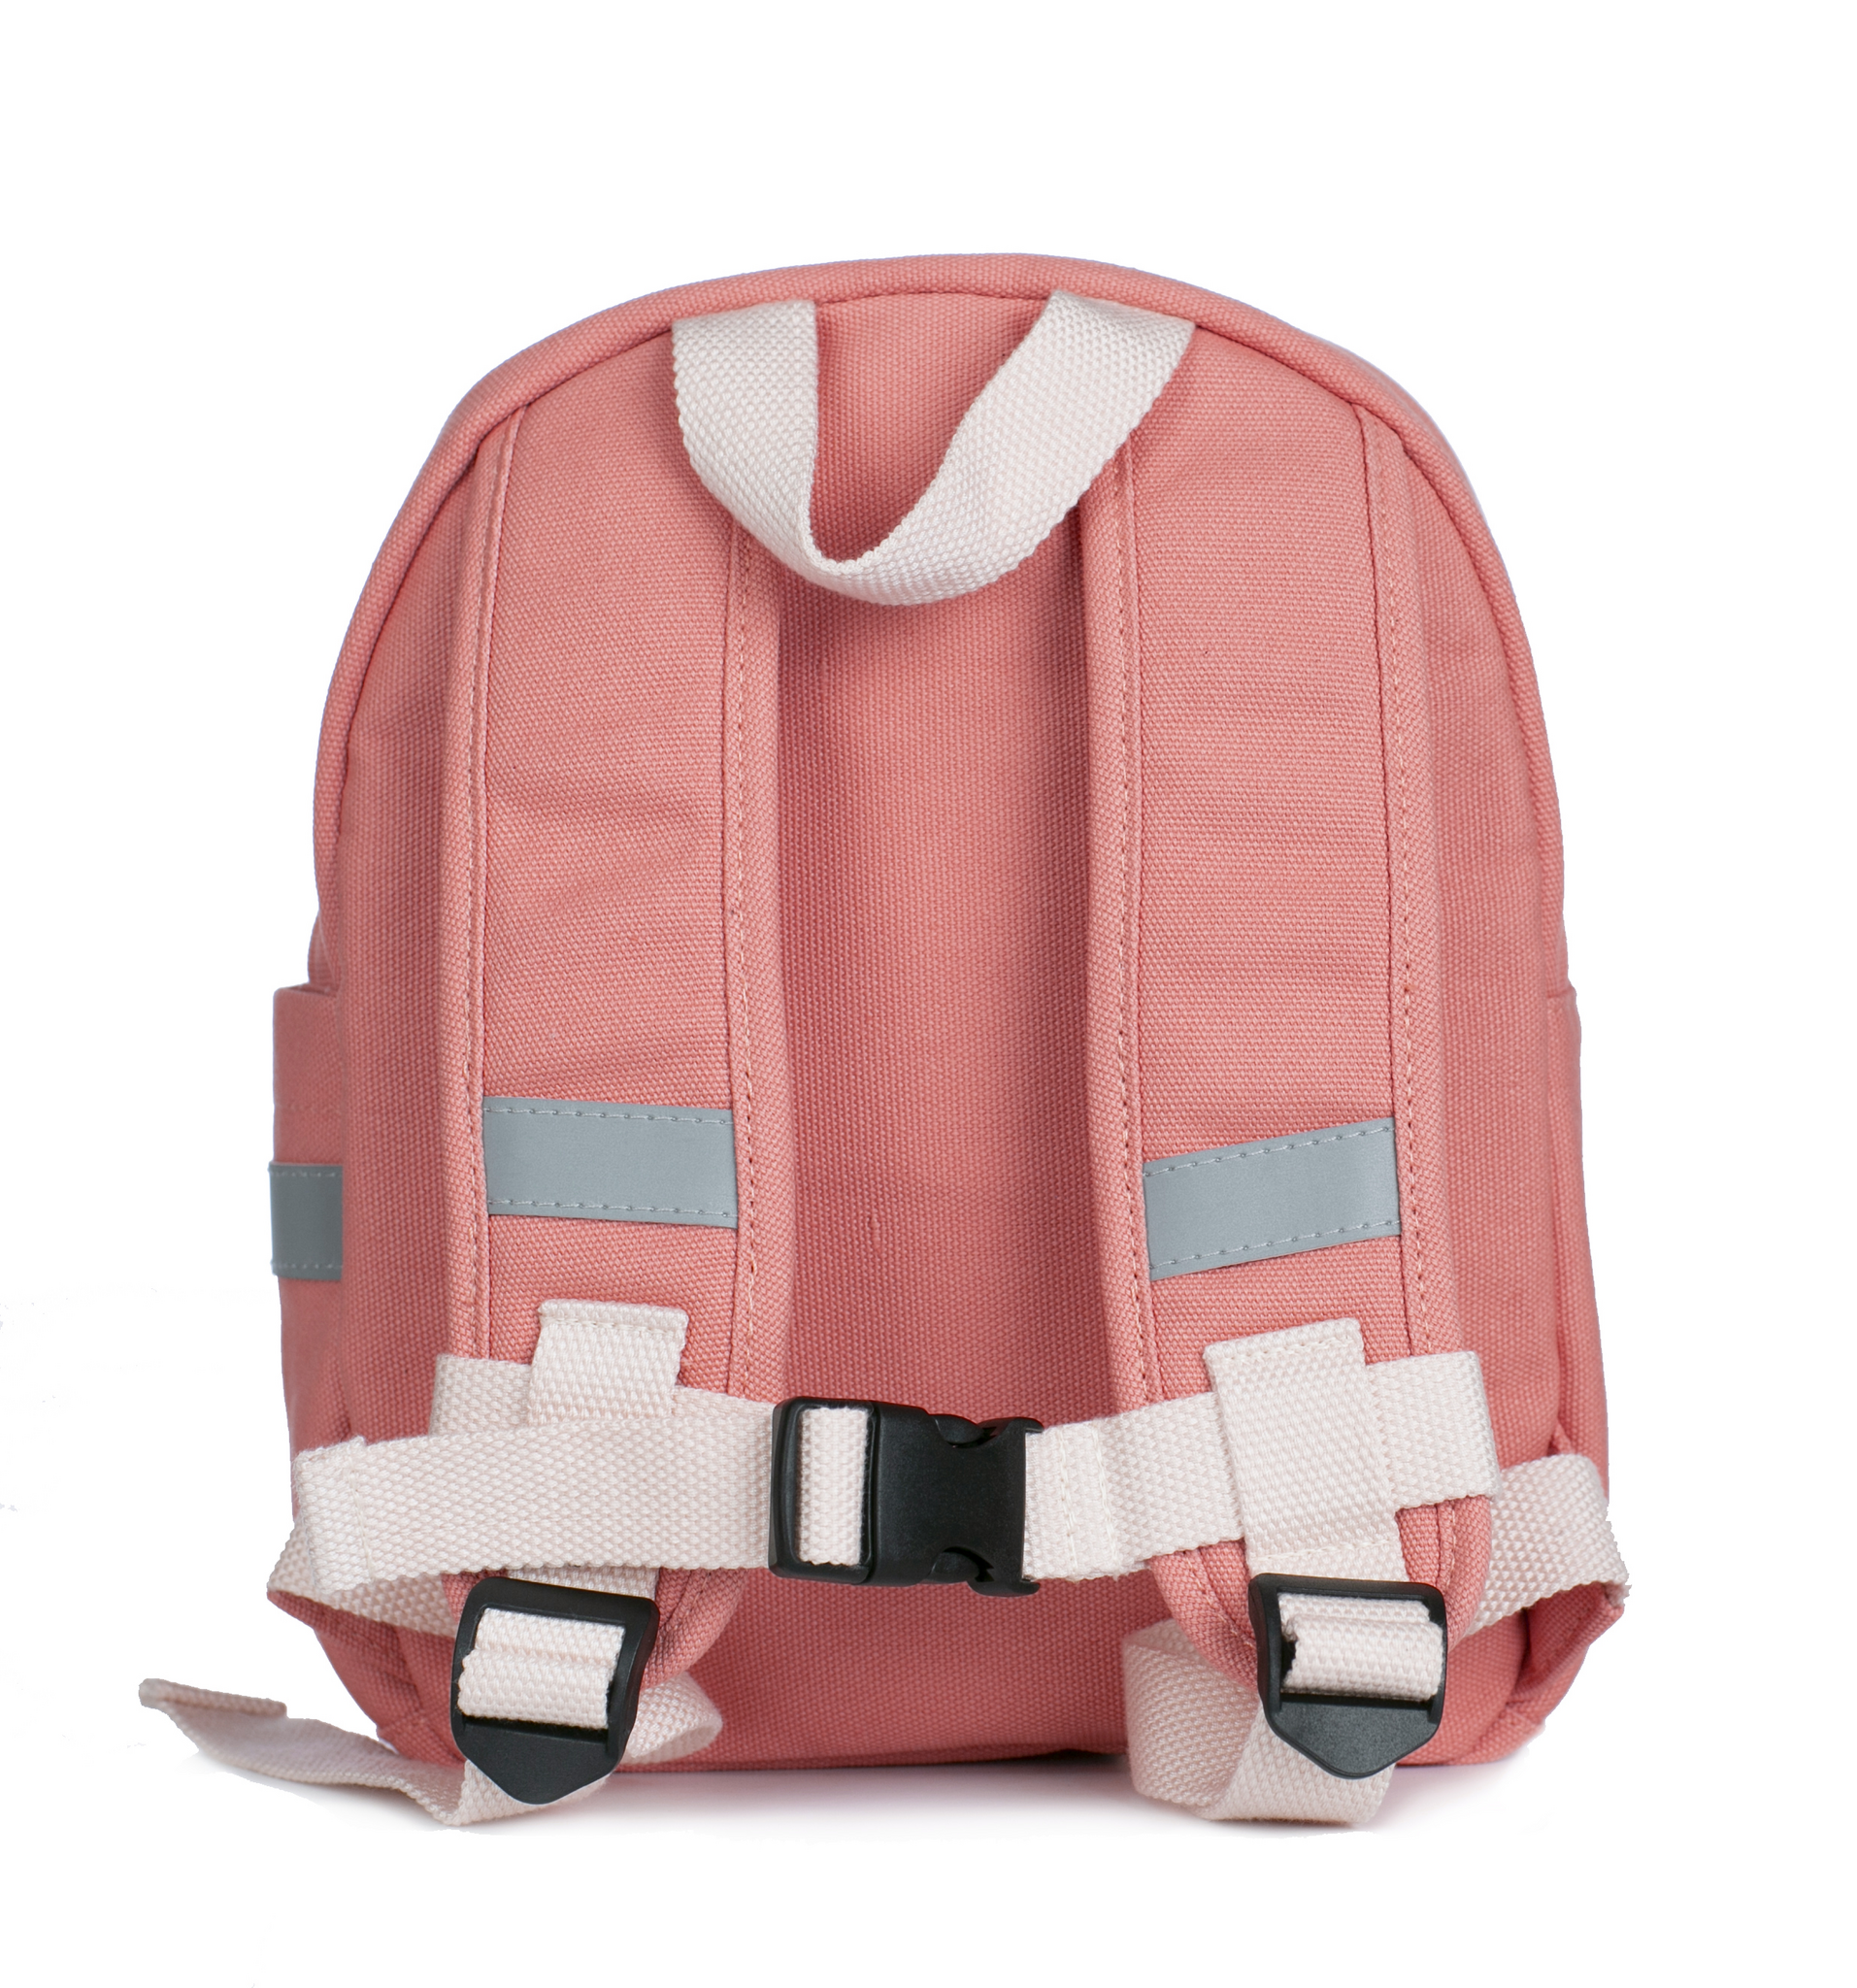 Pellianni- Backpack Spotted Pink/ väskor